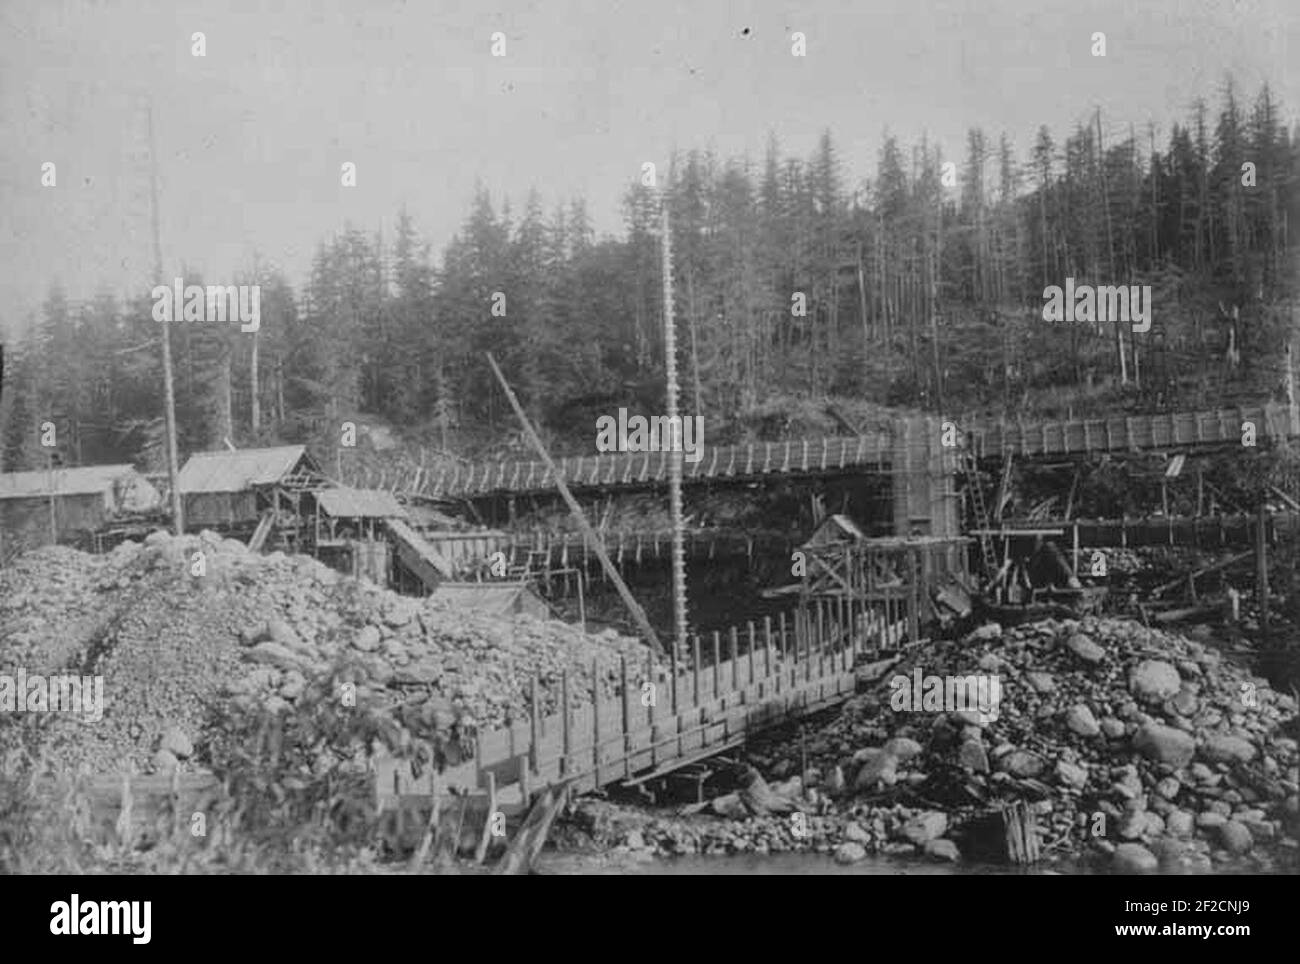 Porcupine Gold Mining Company Abfluß im Bau, der das Auslaufen von der Station Nr. 2 zeigt, wie von der Seite gesehen (AL+CA 2334). Stockfoto